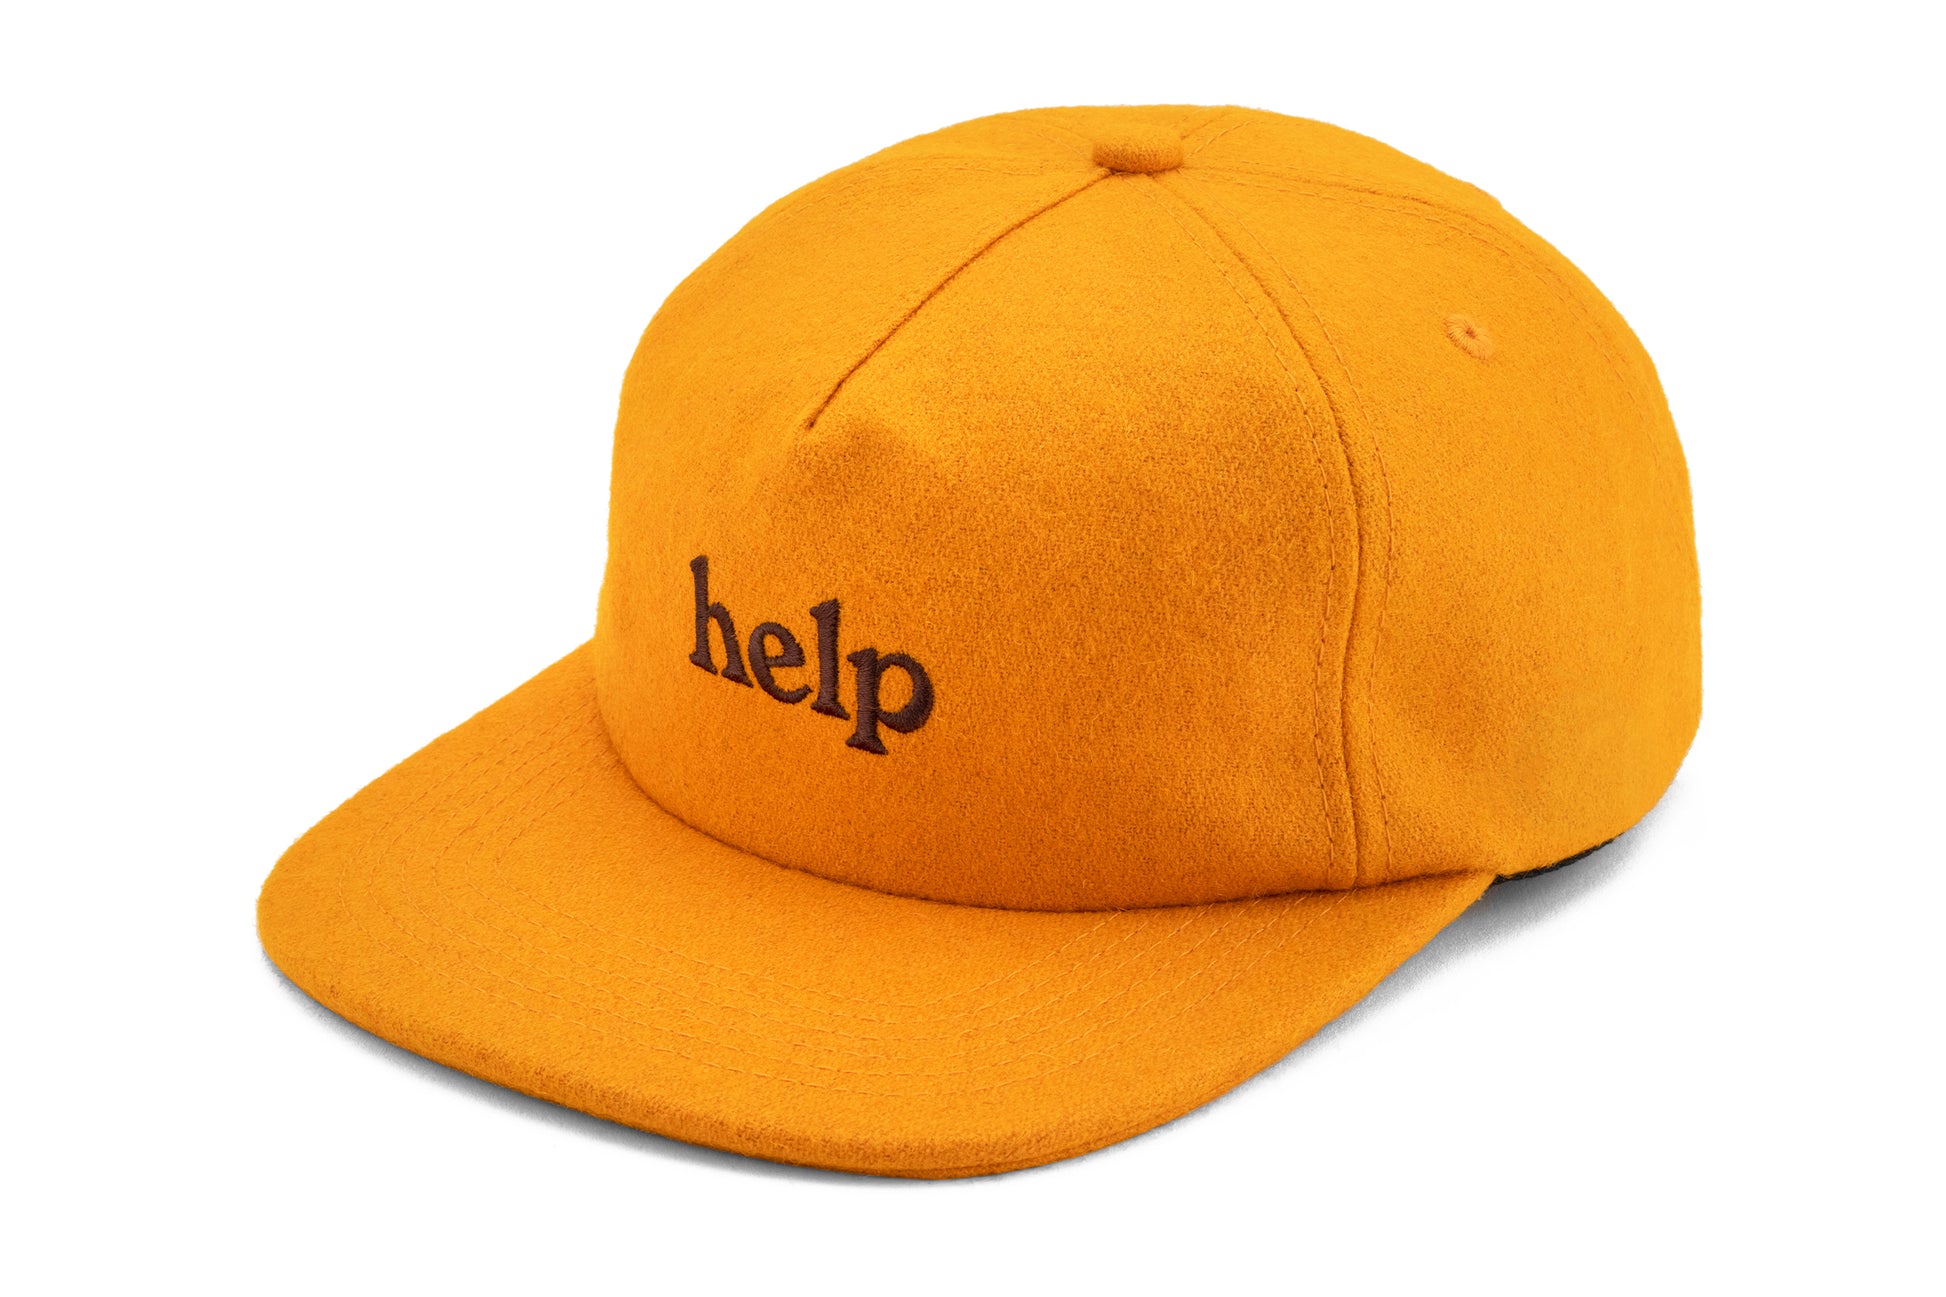 Benefit Hat - helpmfg